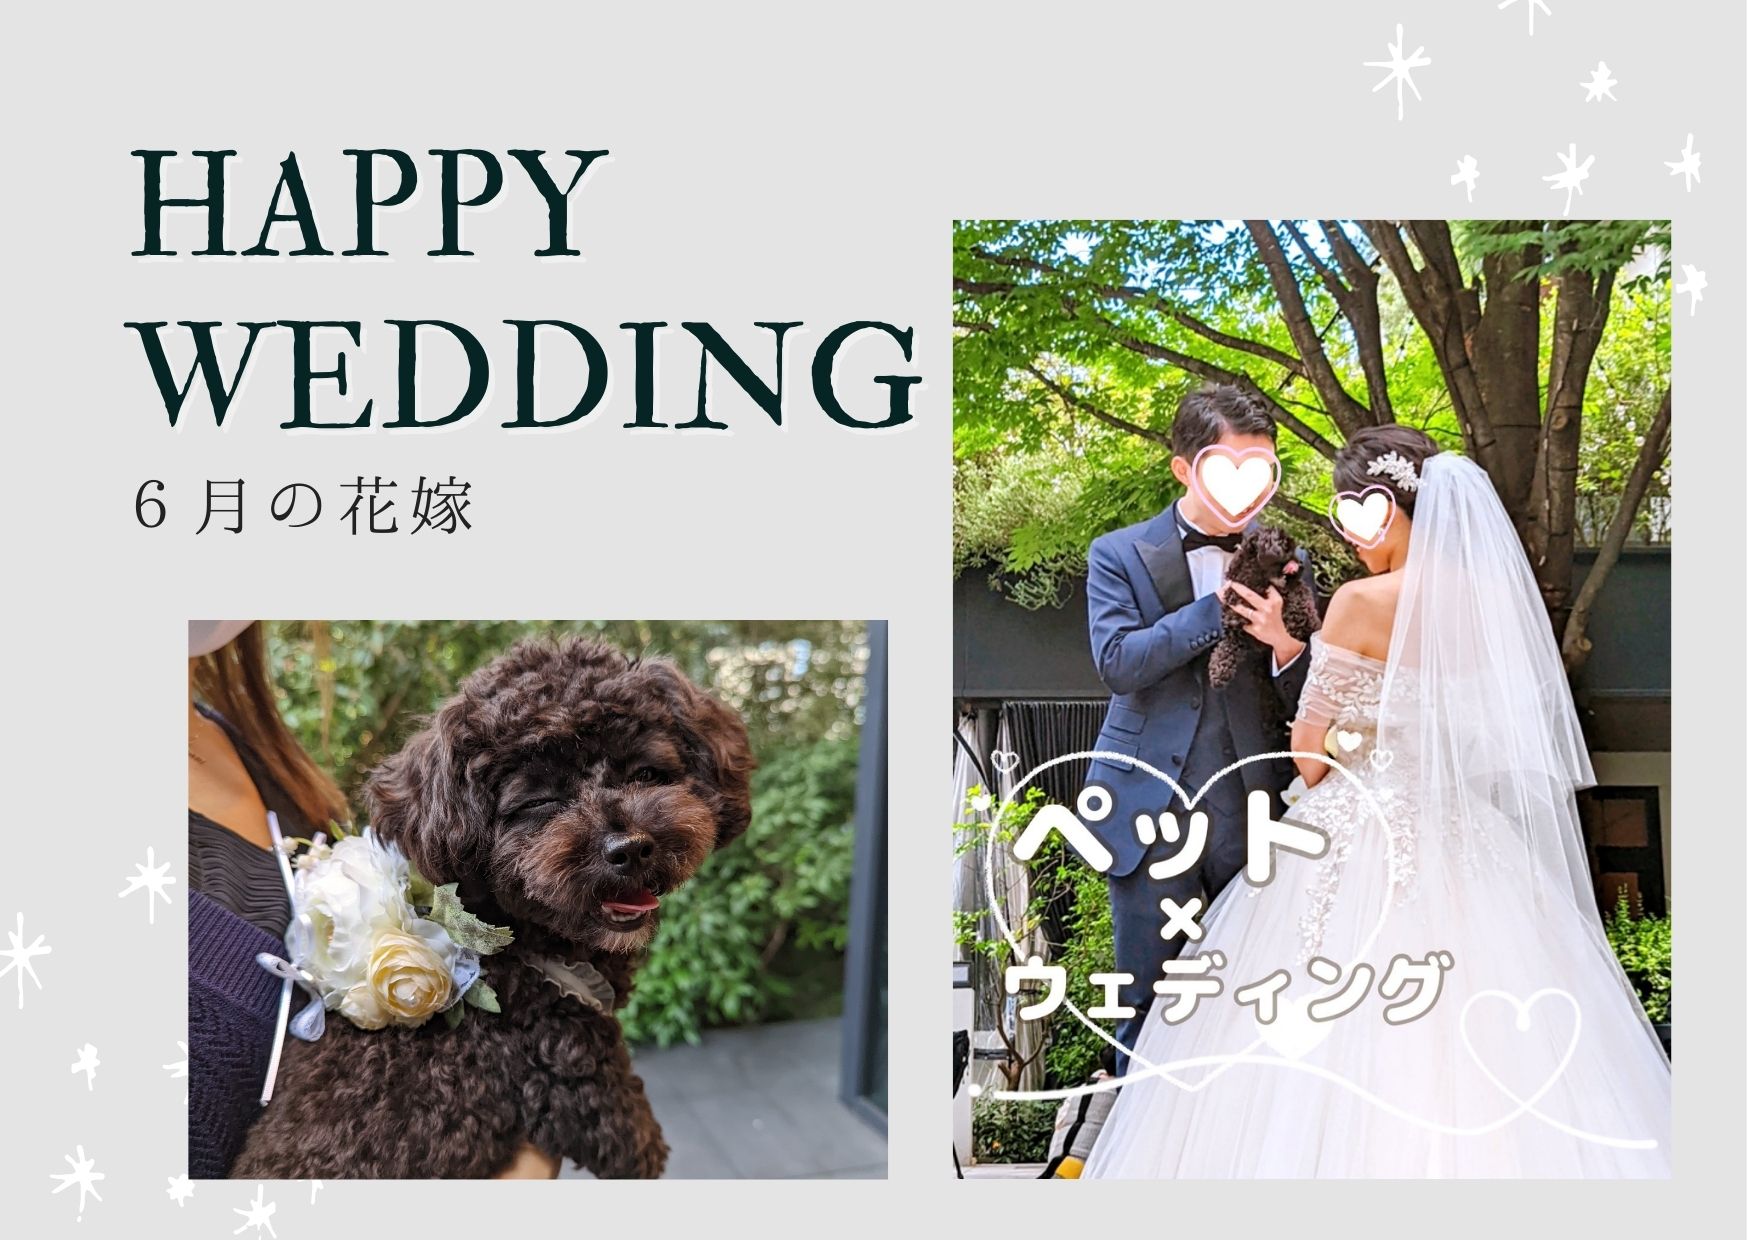 東京での結婚式、愛犬も主役に✧リングドッグペットシッター